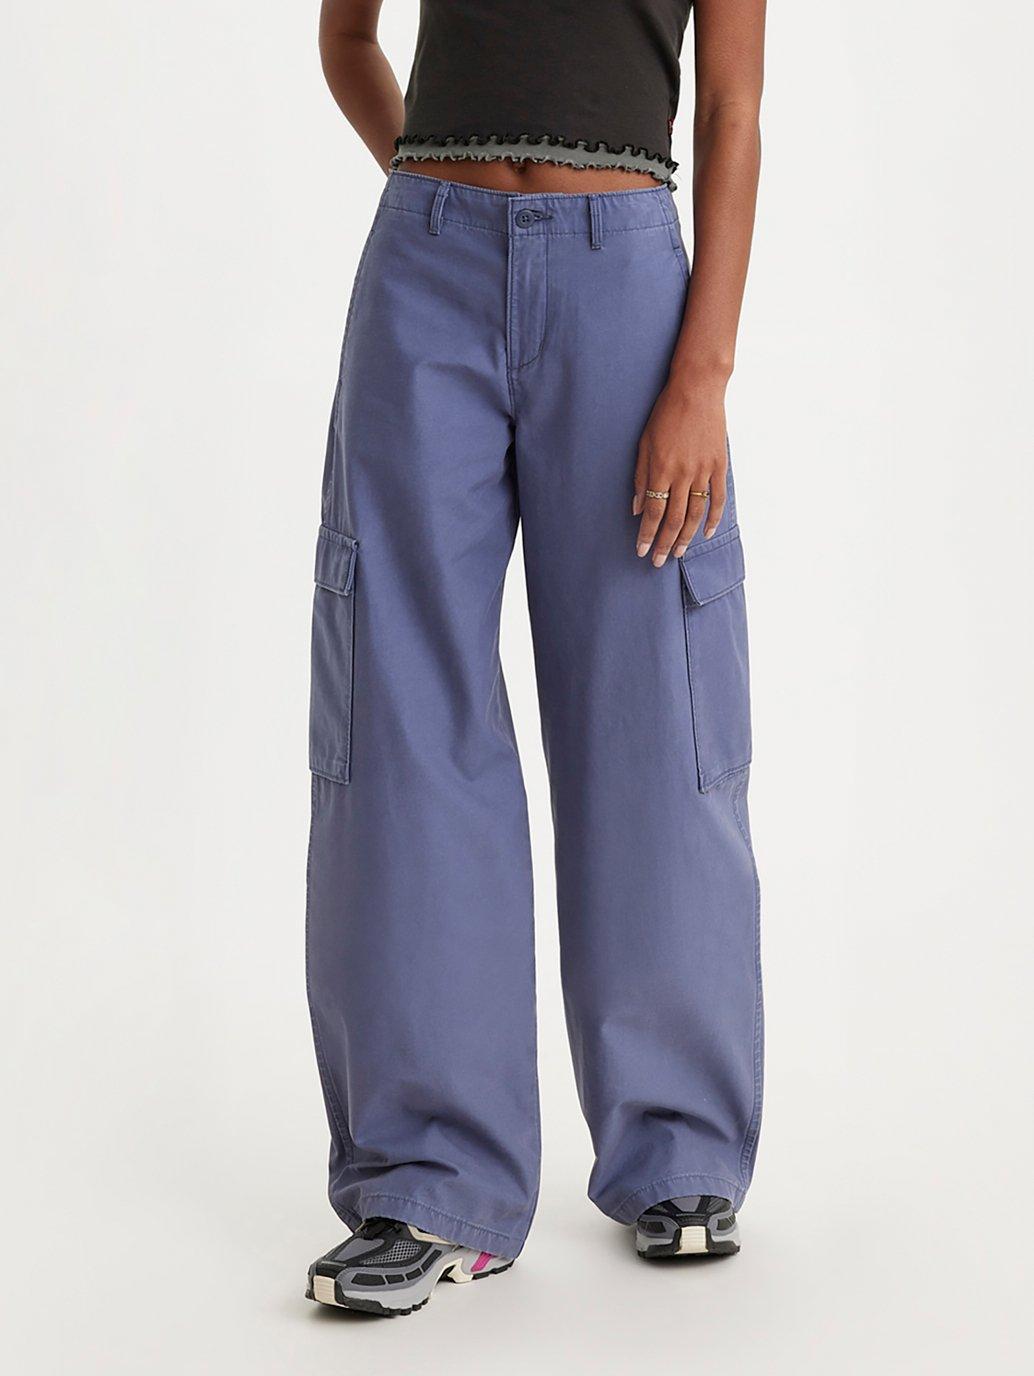 Buy Levi's® Women's Baggy Cargo Pants | Levi’s Official Online Store SG